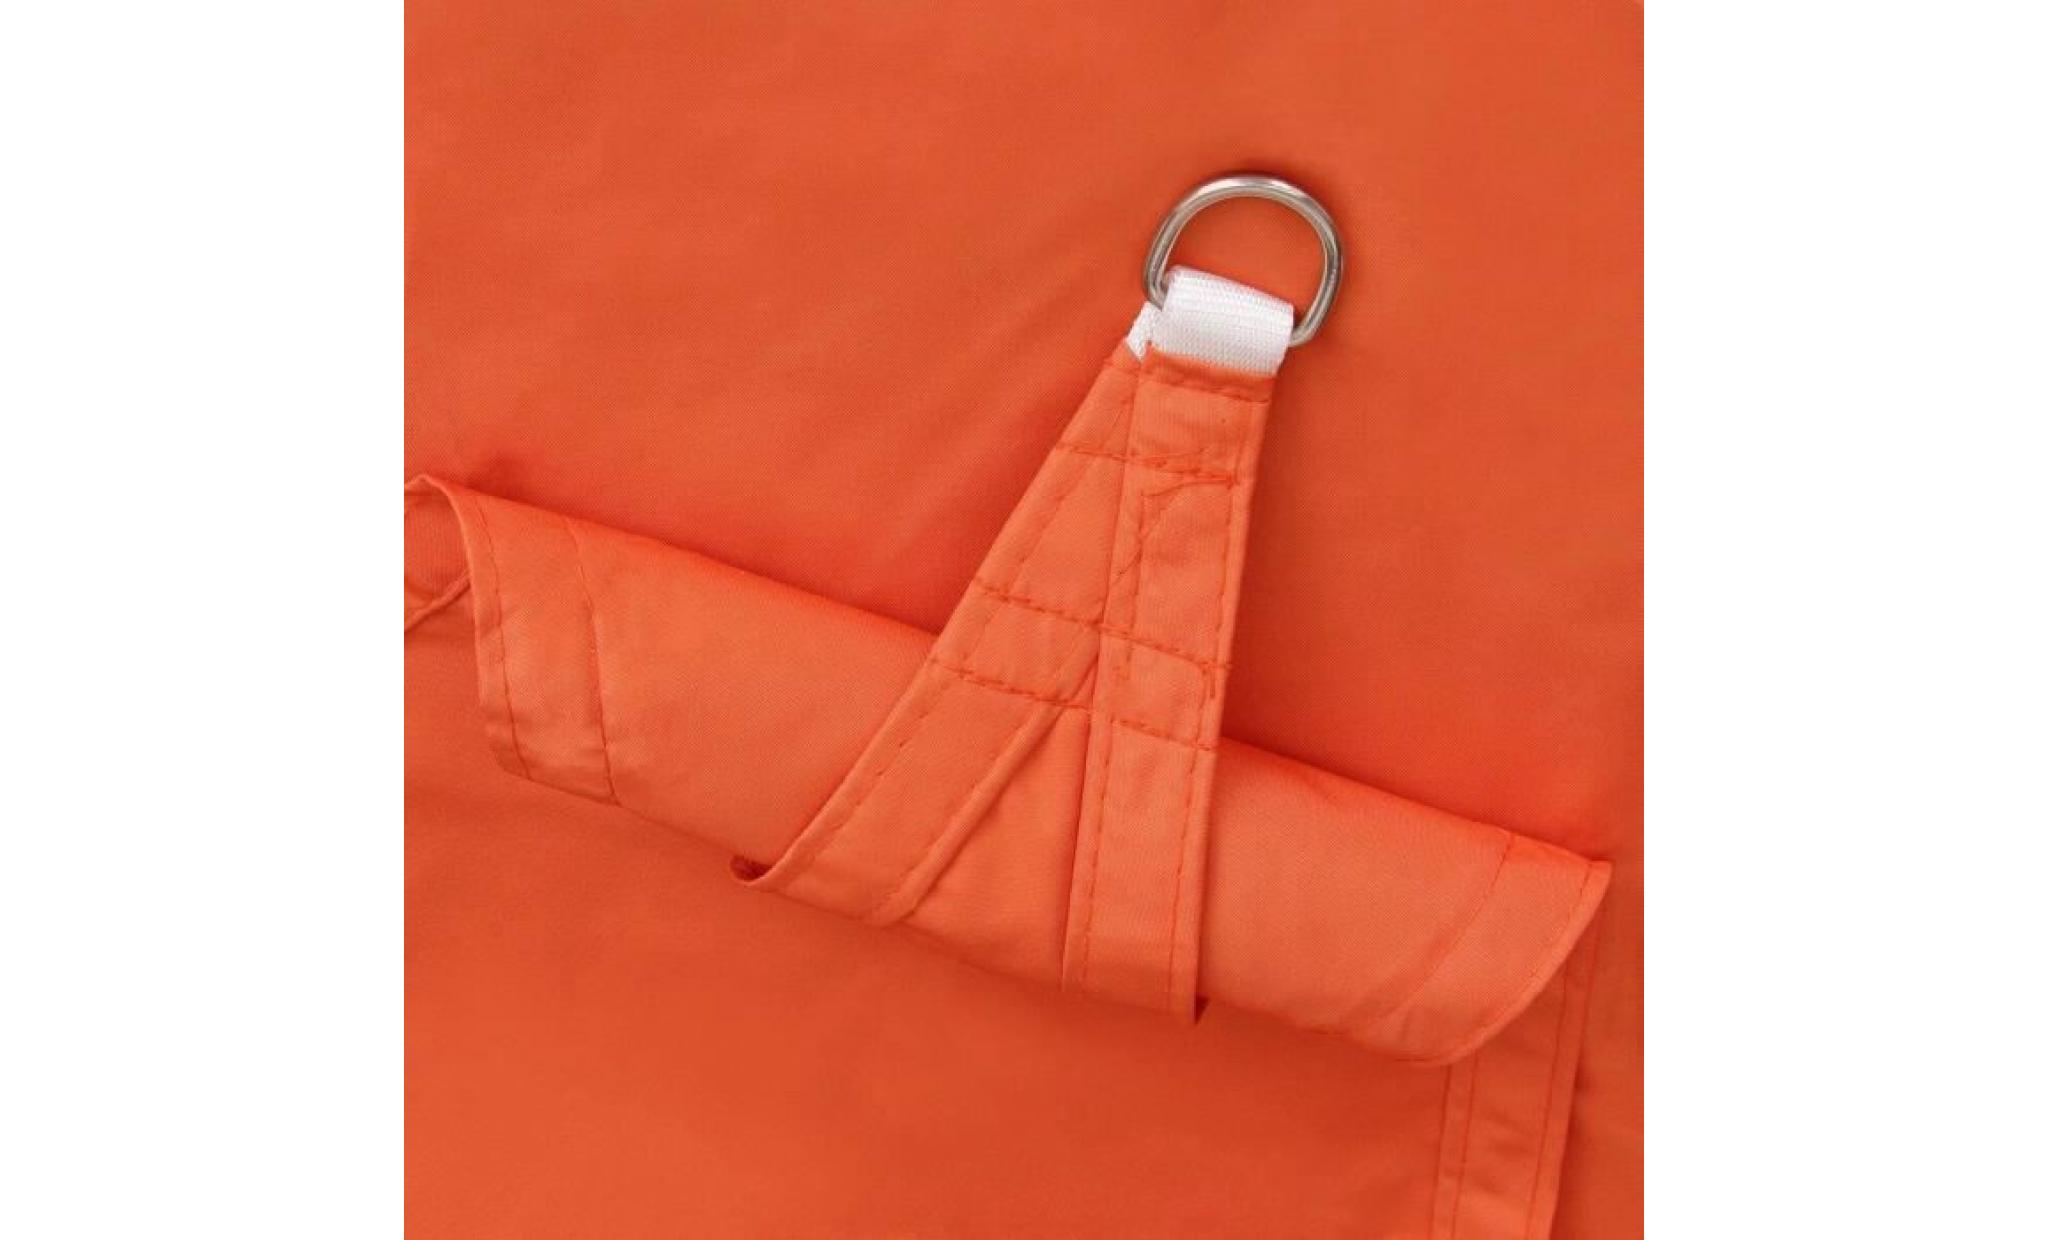 amorus 3*3*3m voile d'ombrage triangulaire tissu polyester imperméable réduire la température bords tricotés double face pas cher